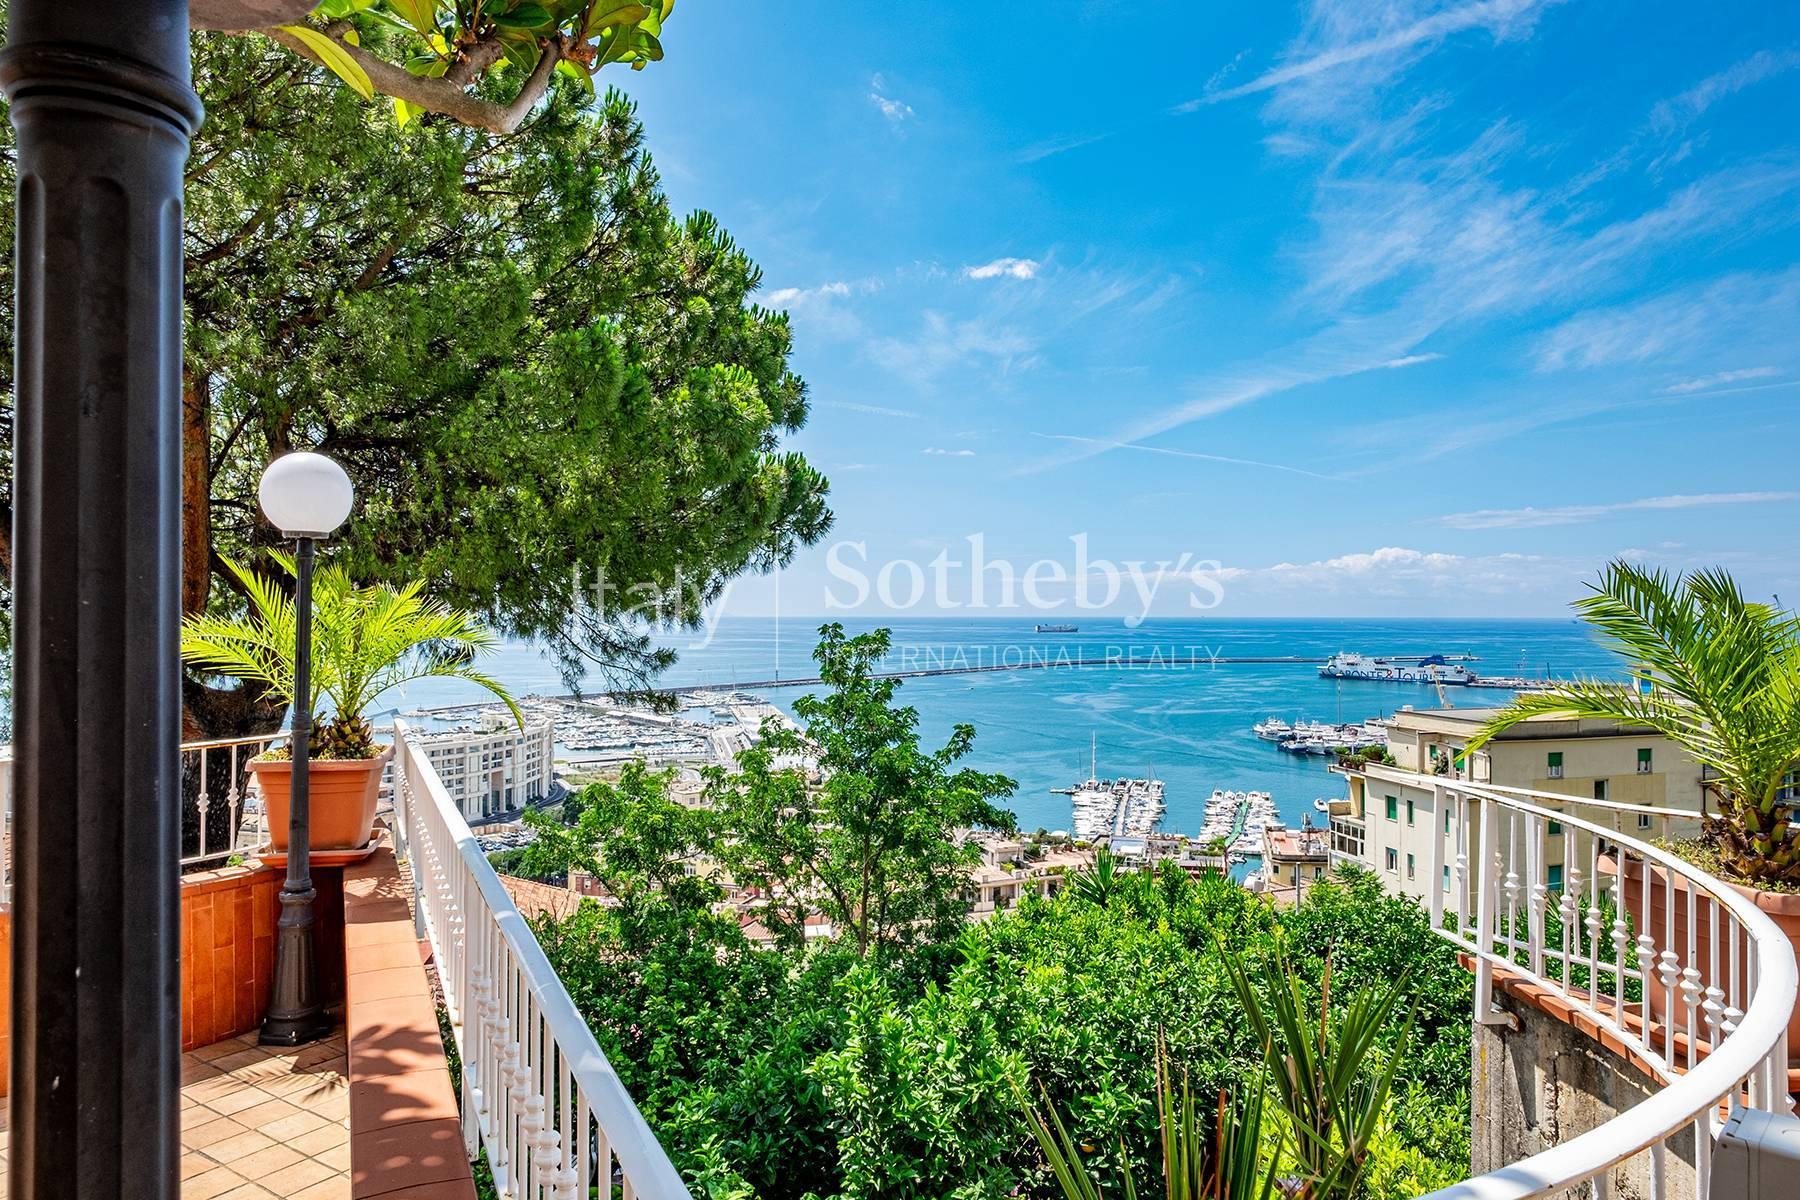 Villa esclusiva con terrazze e giardini panoramici tra Salerno e Vietri sul Mare - 7